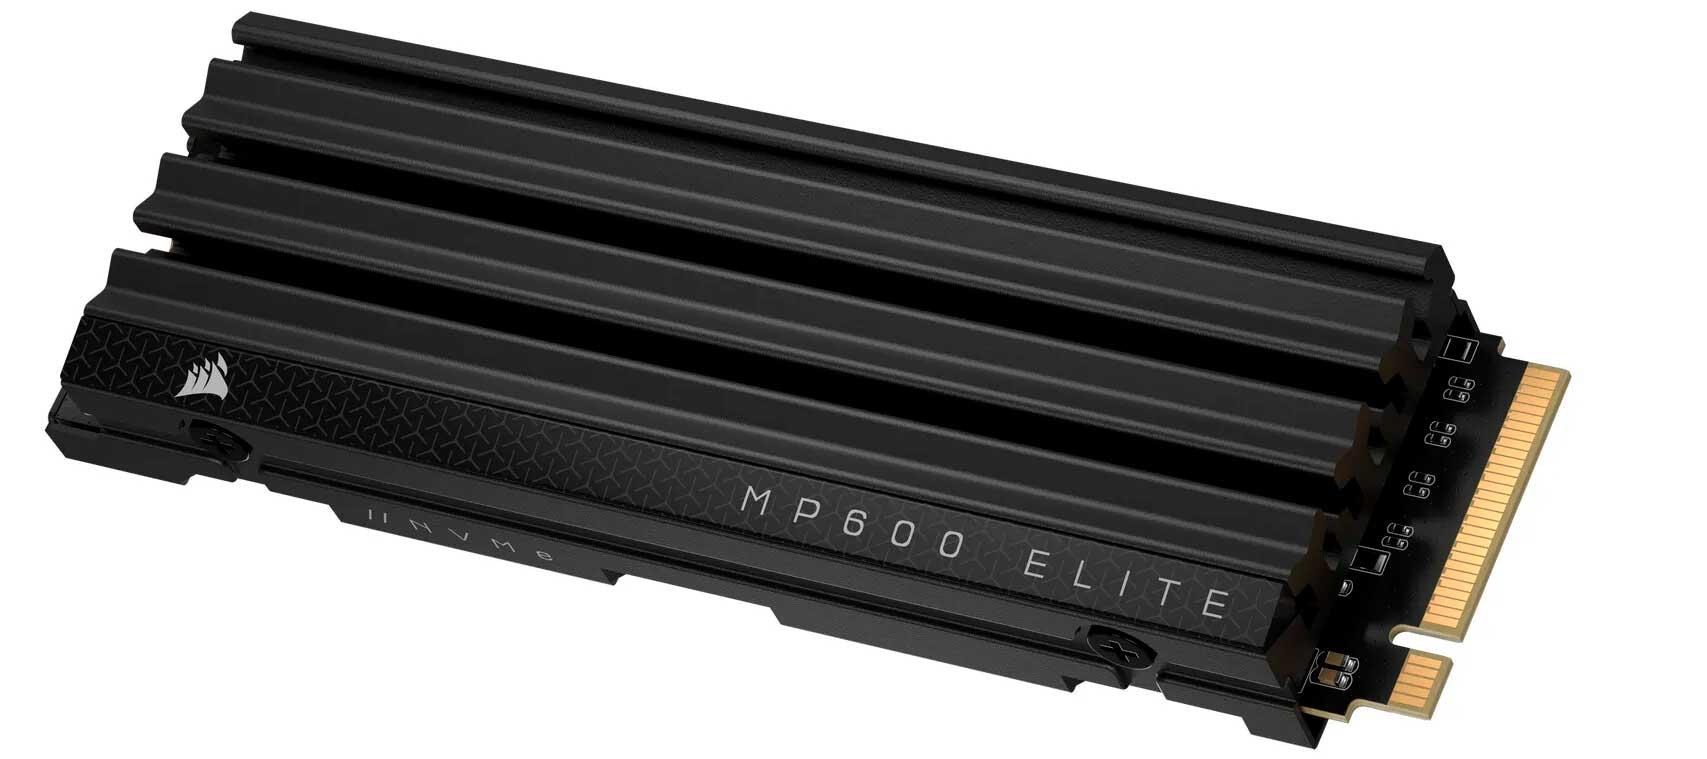 SSD Corsair MP600 Elite